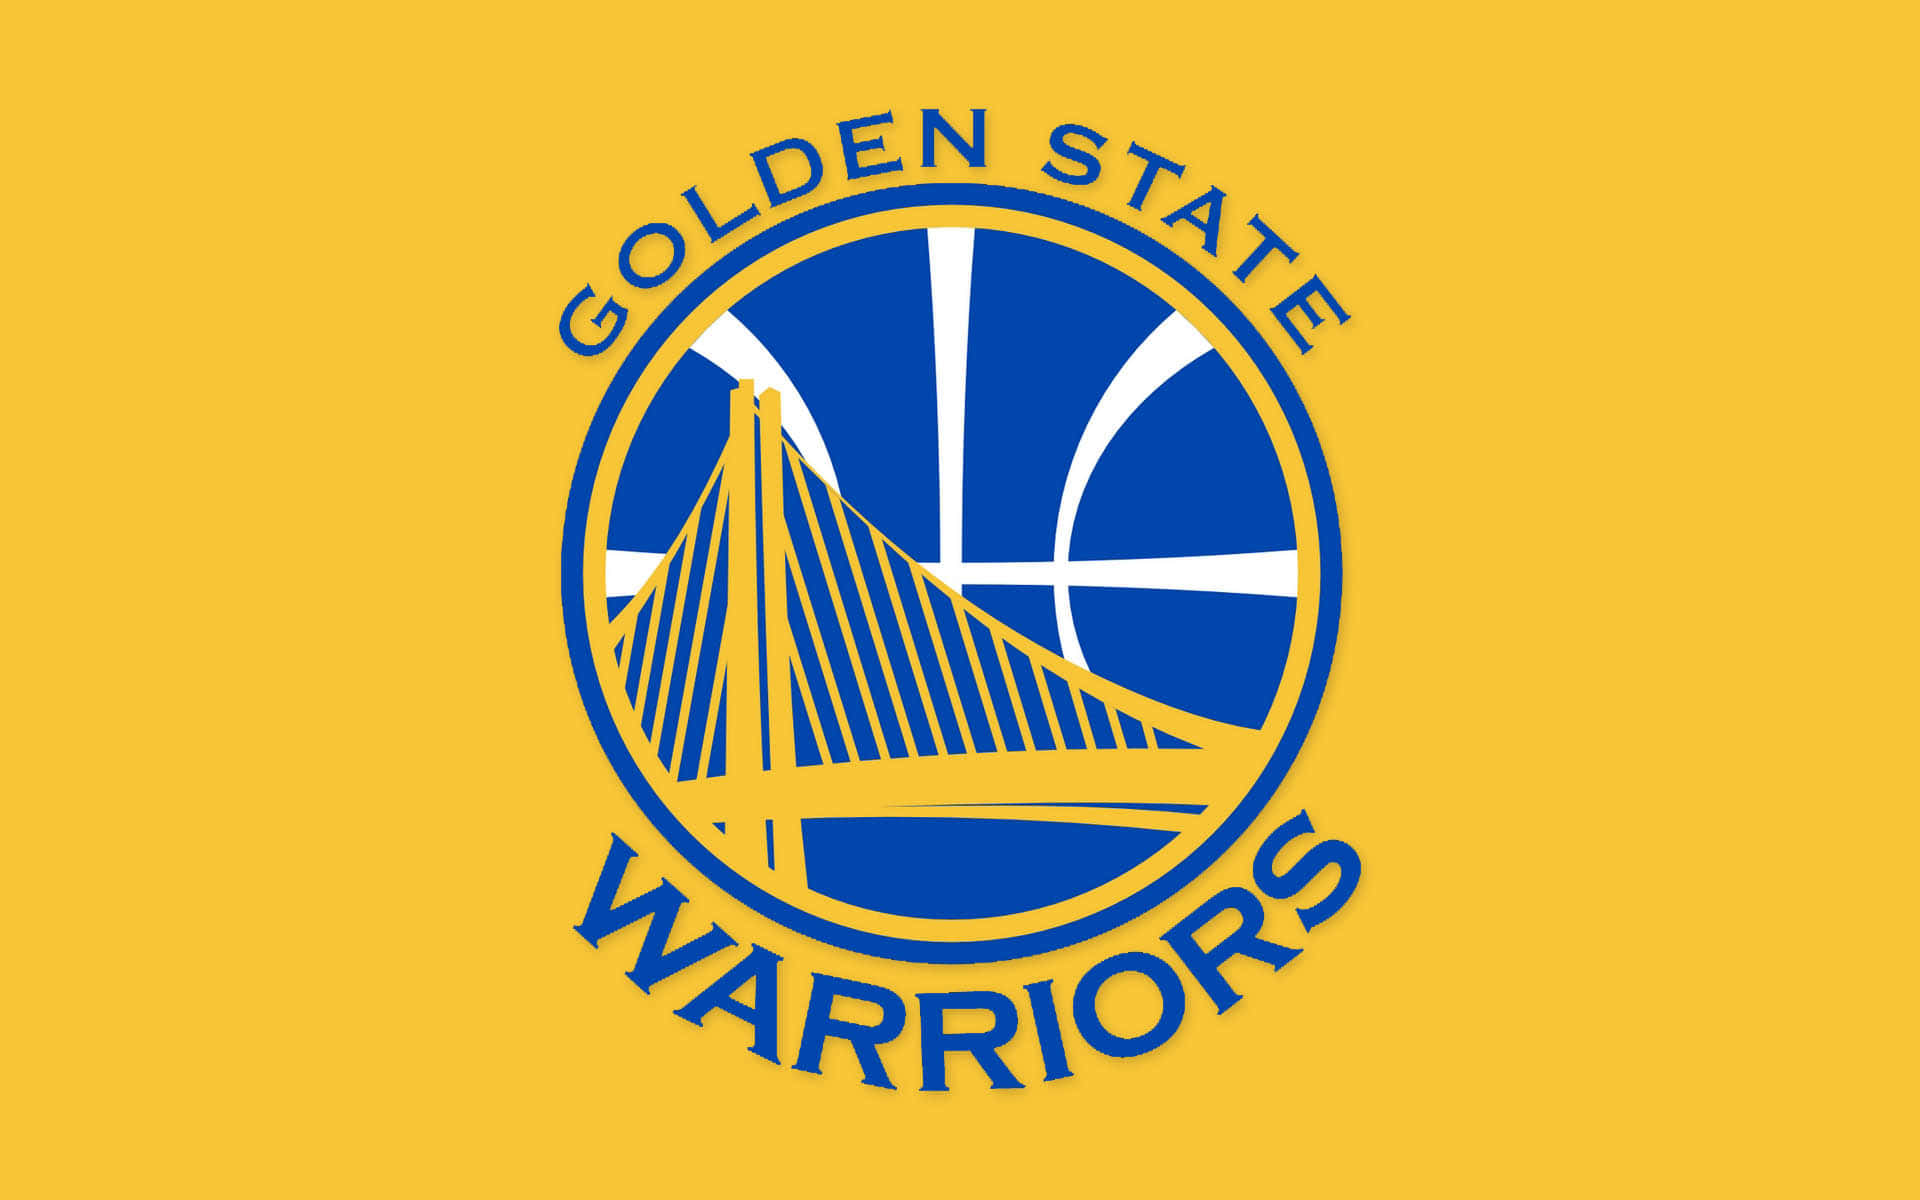 Logode Los Golden State Warriors Sobre Un Fondo De Los Colores Del Equipo. Fondo de pantalla